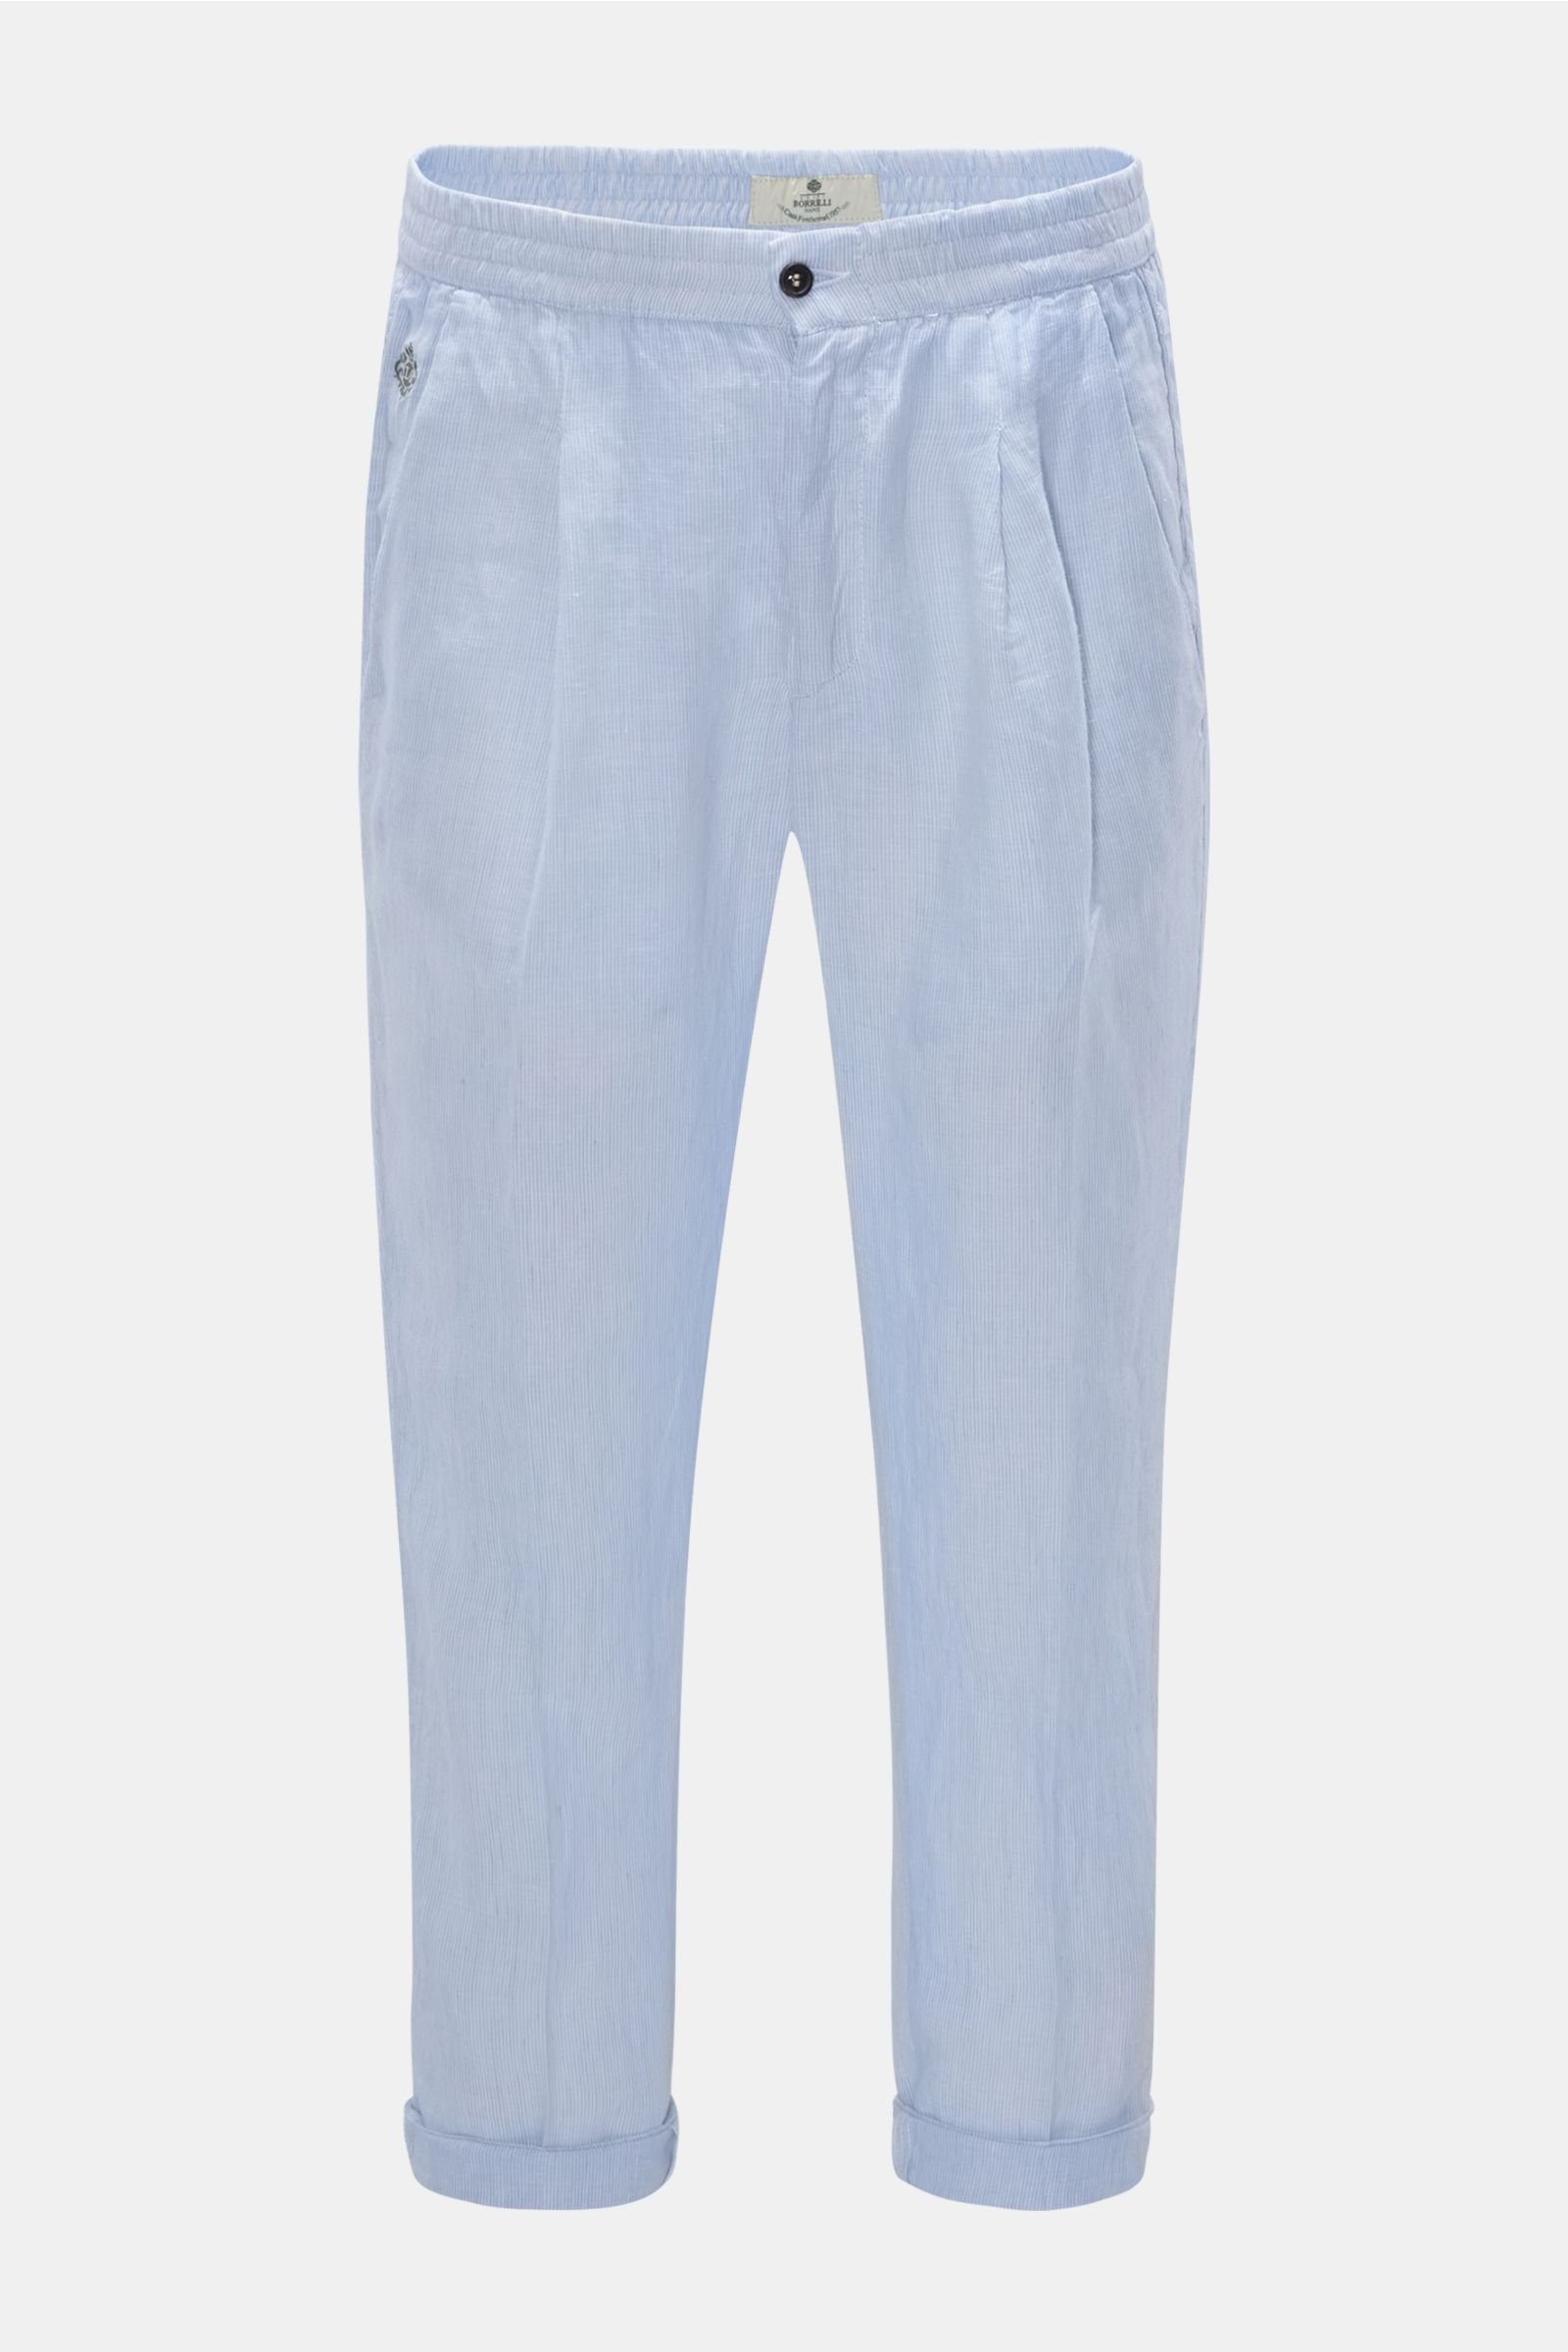 Linen jogger pants 'Filangieri' light blue/white striped